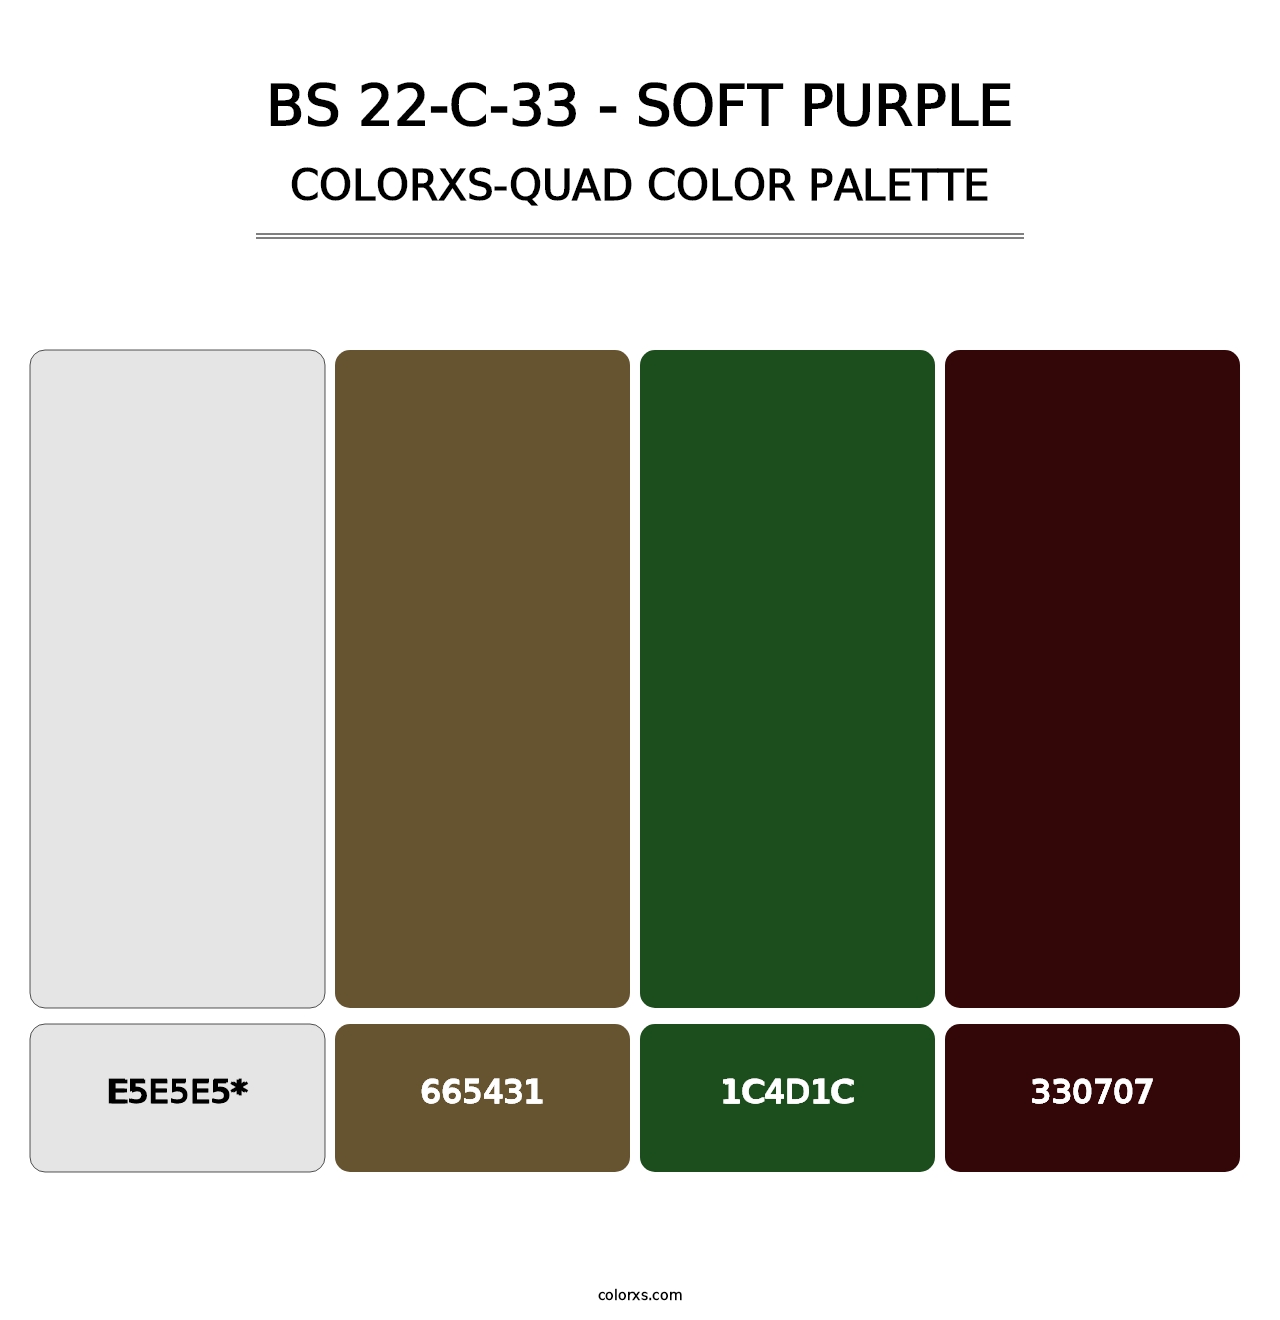 BS 22-C-33 - Soft Purple - Colorxs Quad Palette